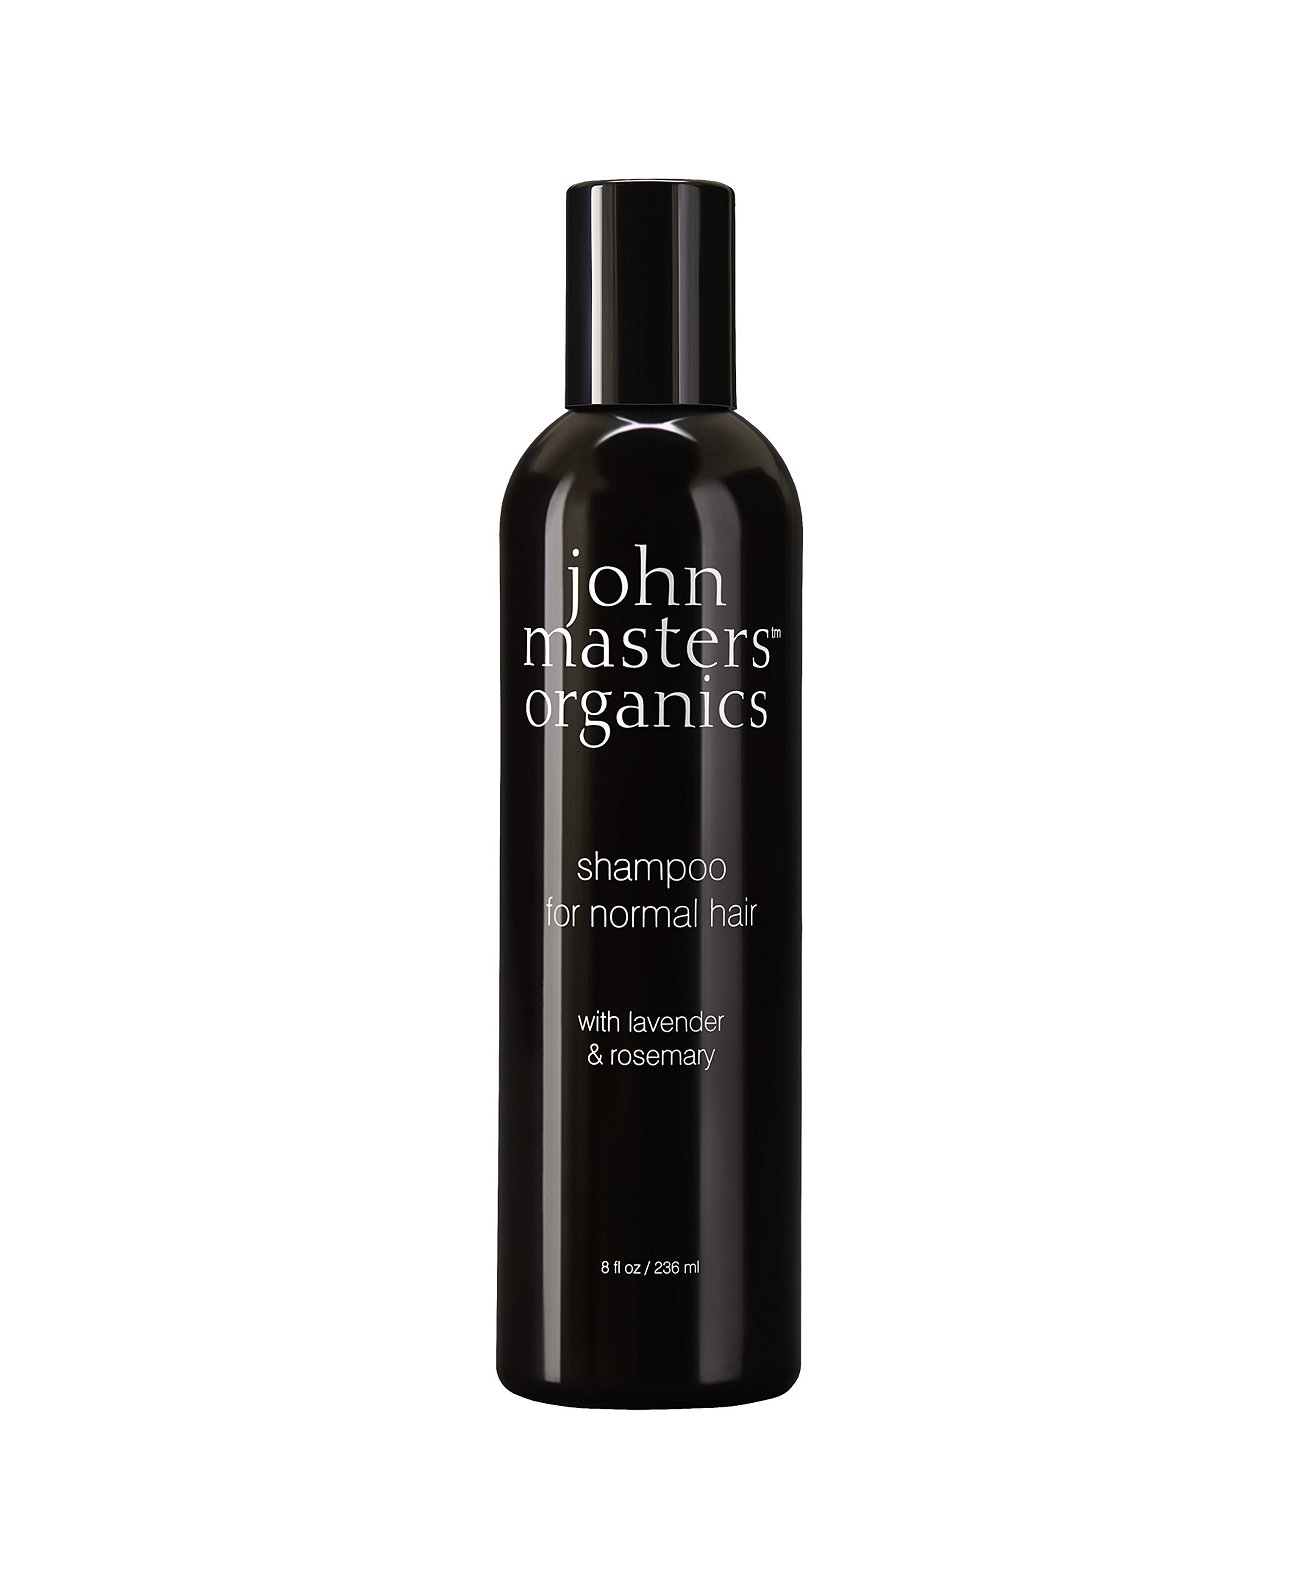 Шампунь для нормальных волос с лавандой и розмарином, 8 унций. John Masters Organics